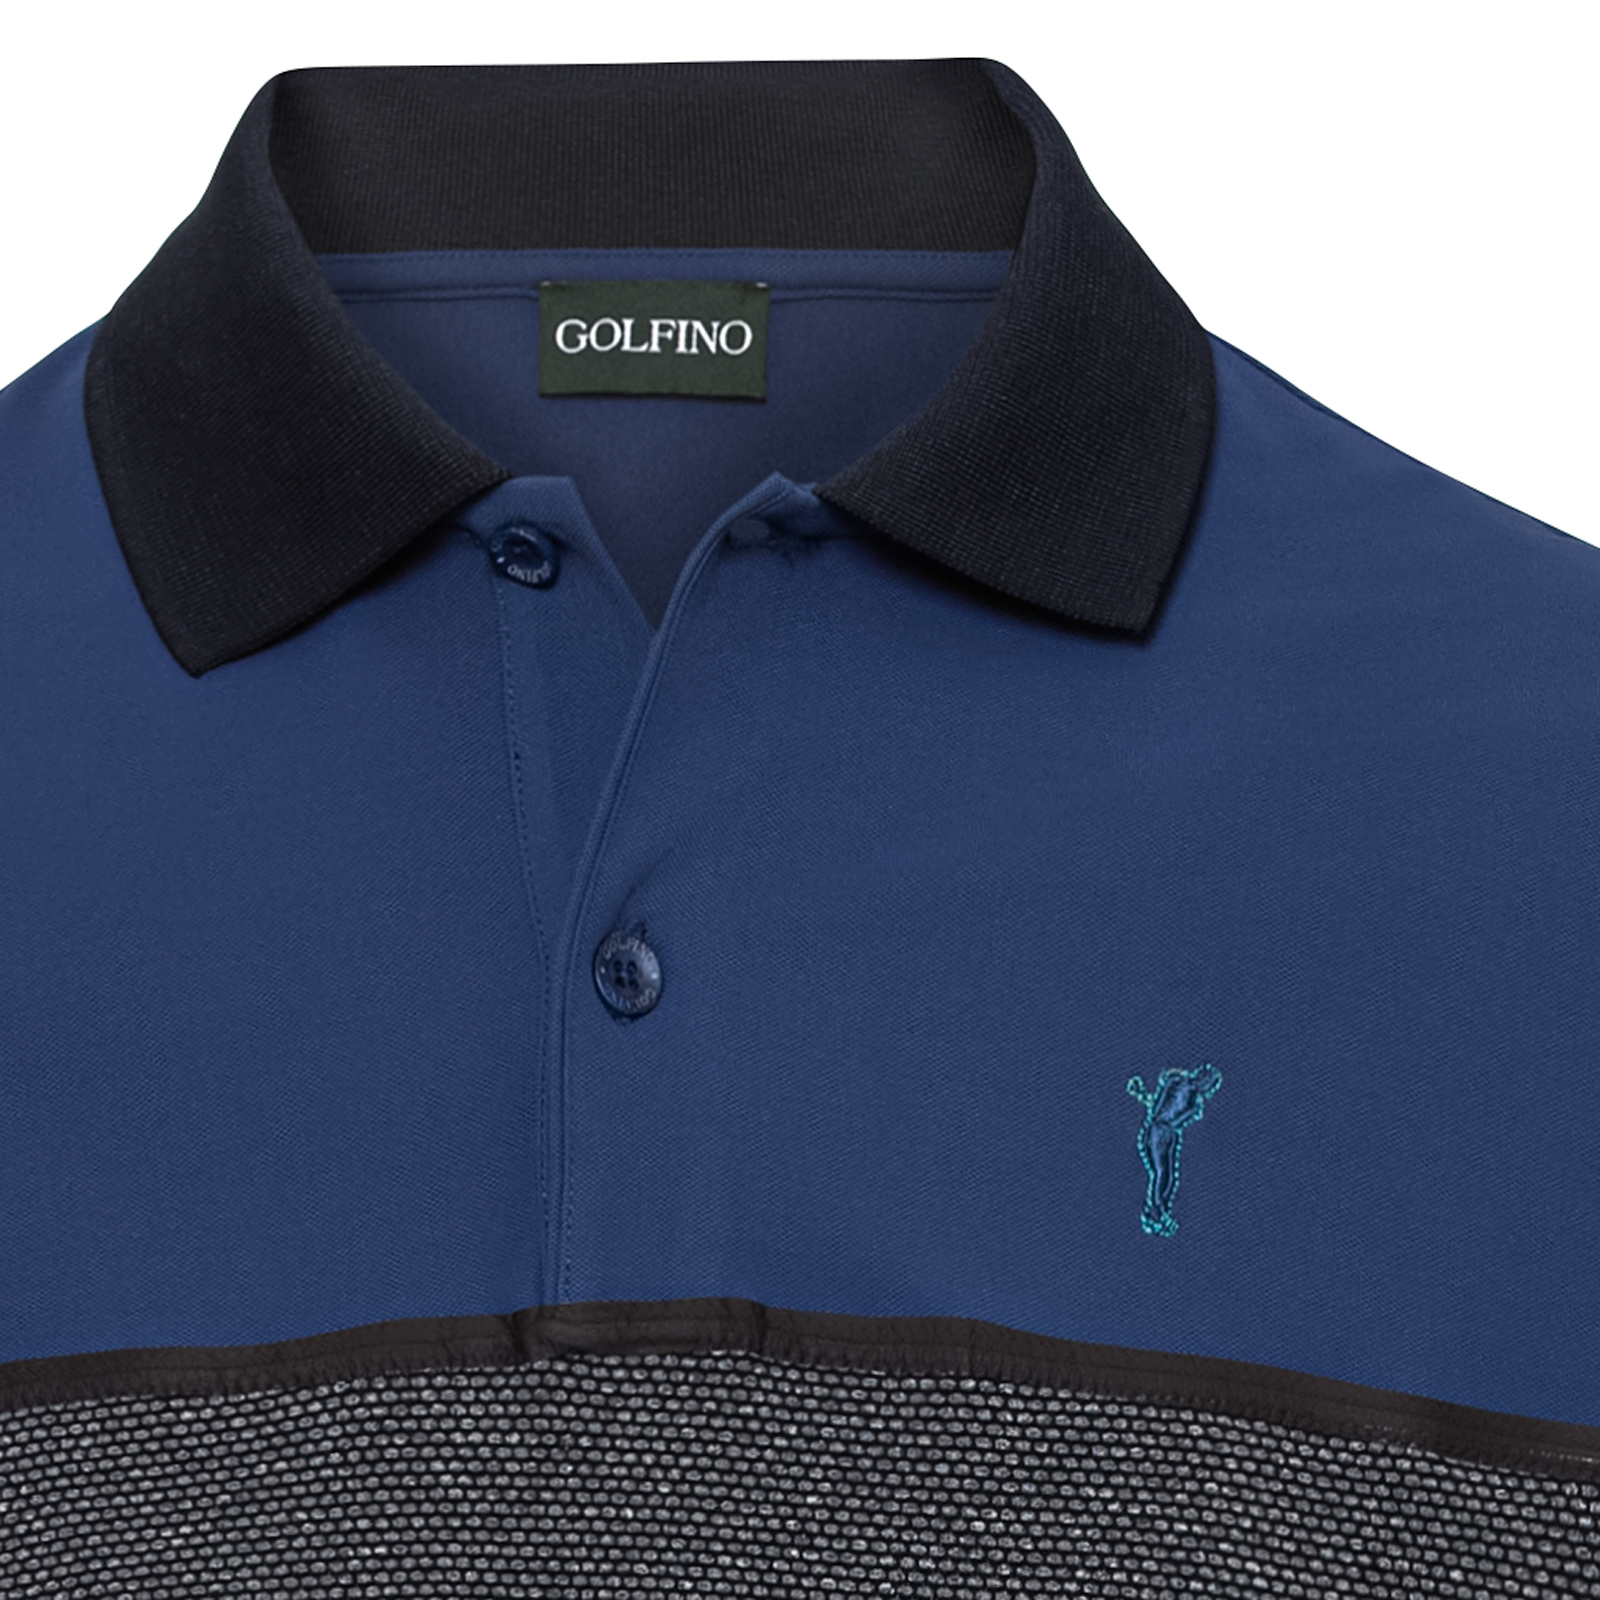 Polo de golf pour hommes de style Colorblocking avec fonction Moisture Management